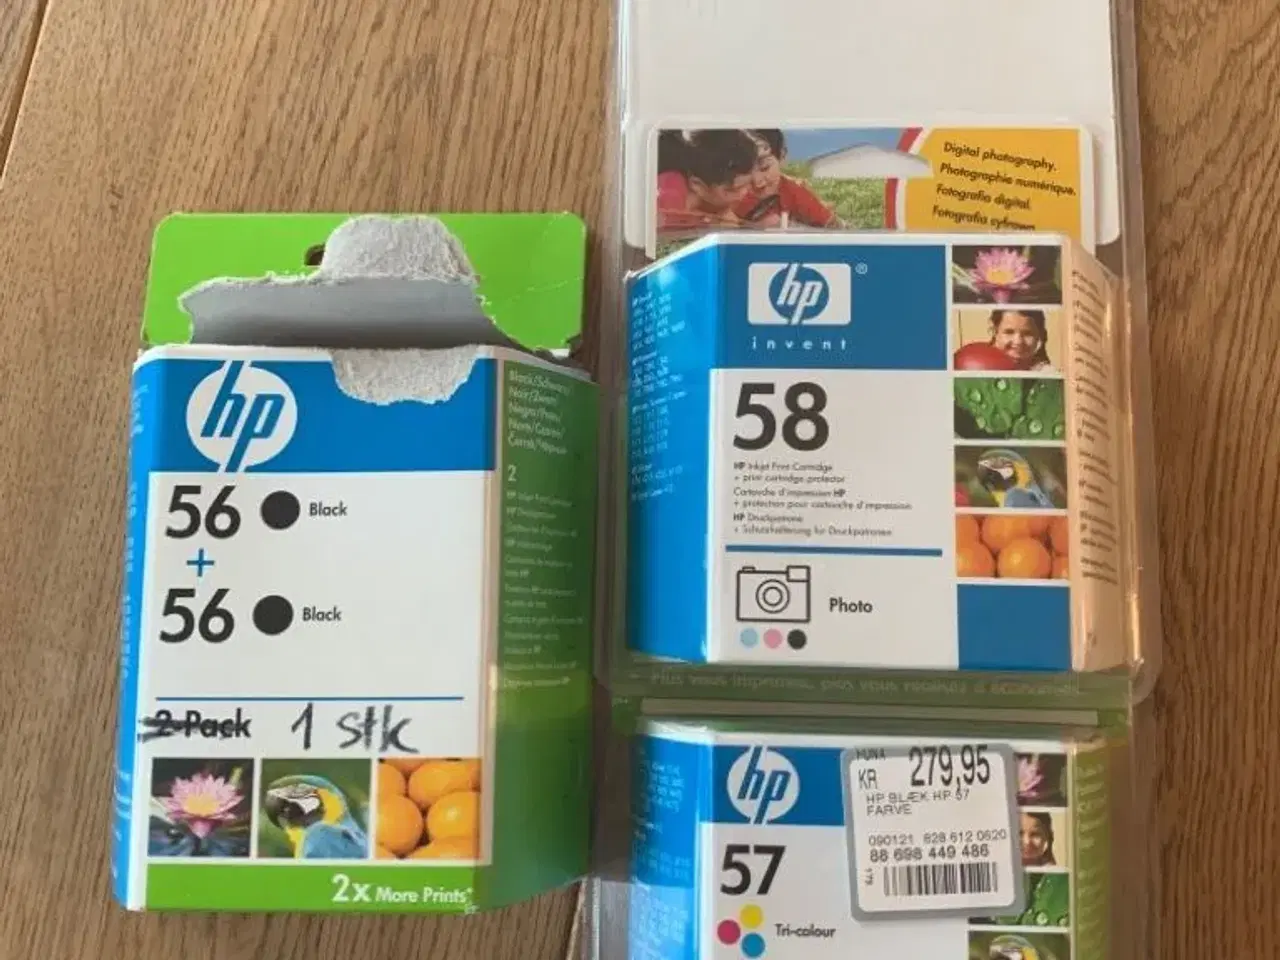 Billede 1 - Blækpatroner til HP printer